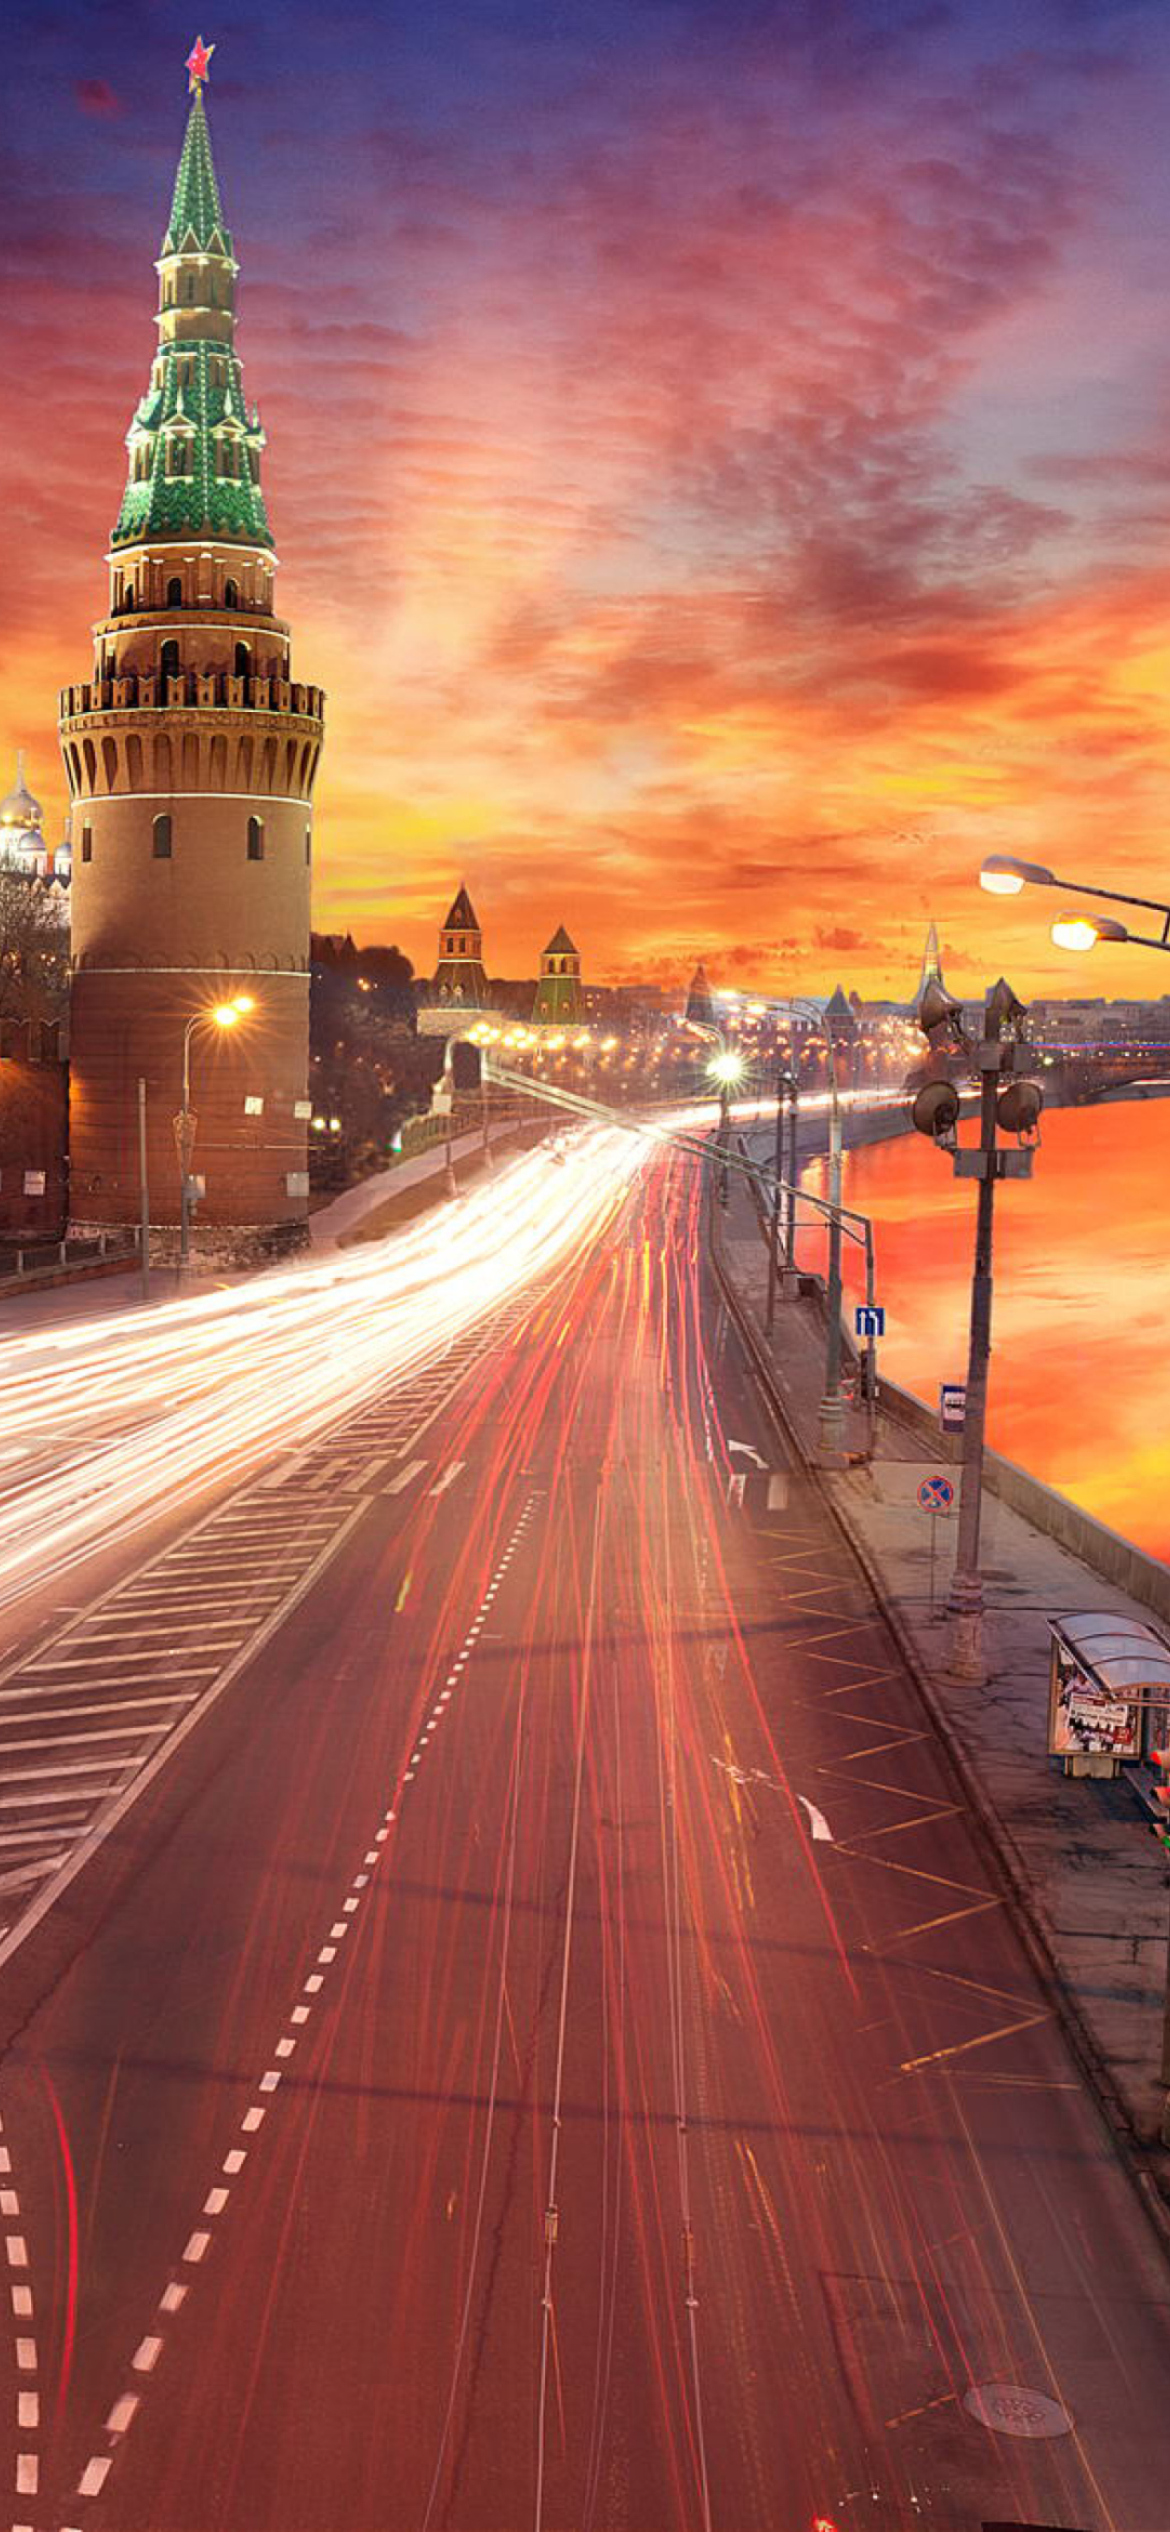 Red Sunset Over Moscow Kremlin screenshot #1 1170x2532